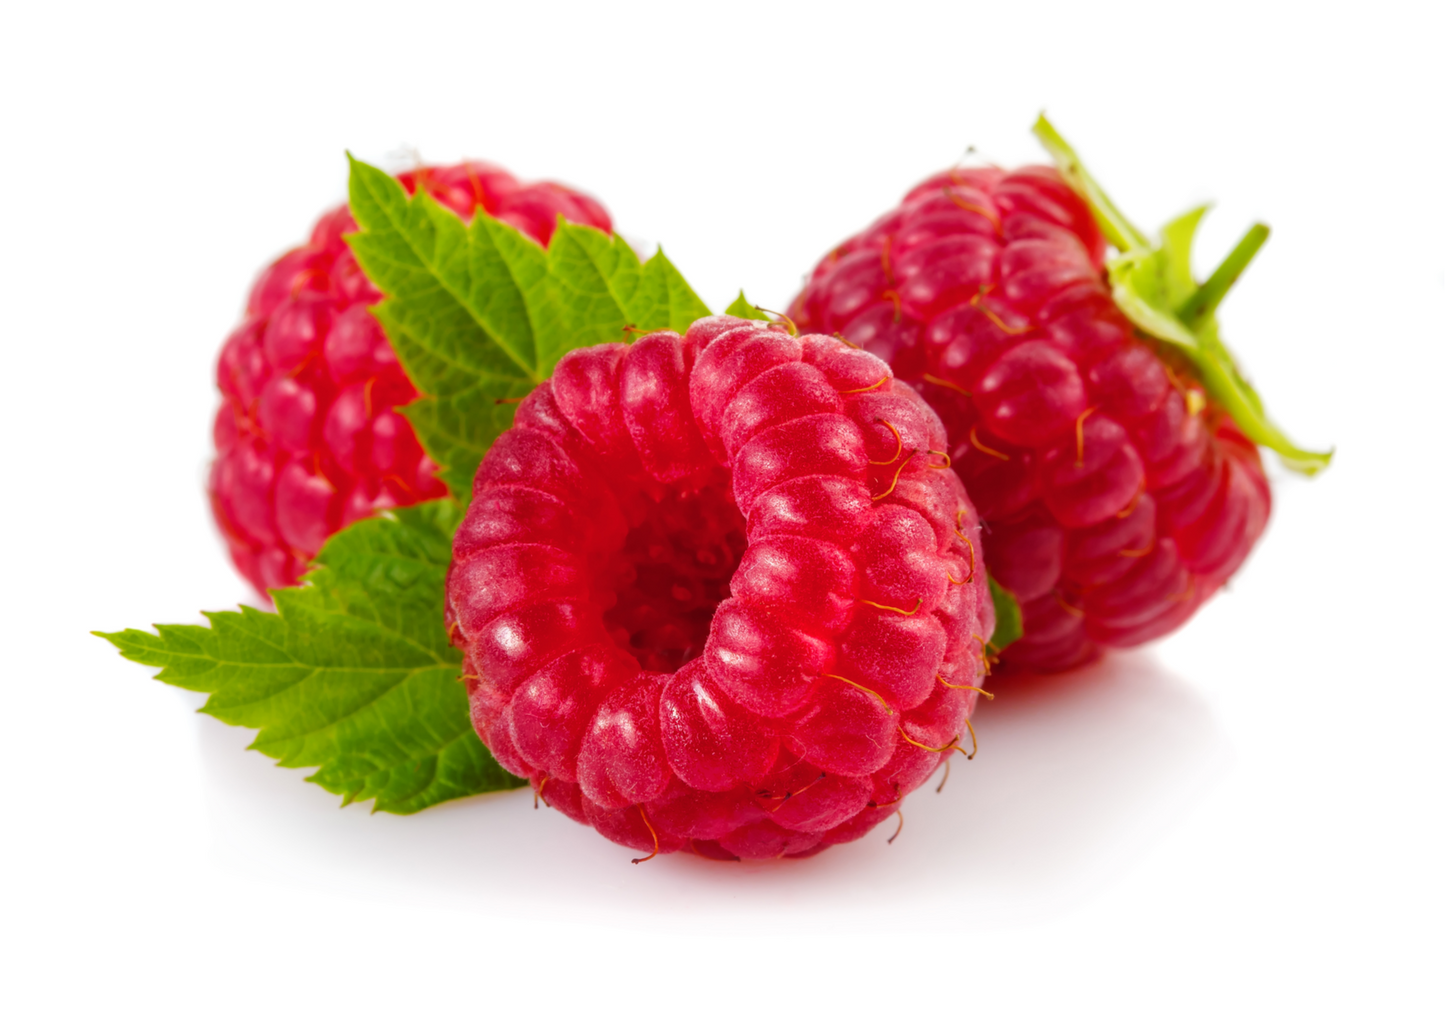 Fruit Plants - Raspberry 'Joan J' - 3 x Full Plants in 2 Litre Pots